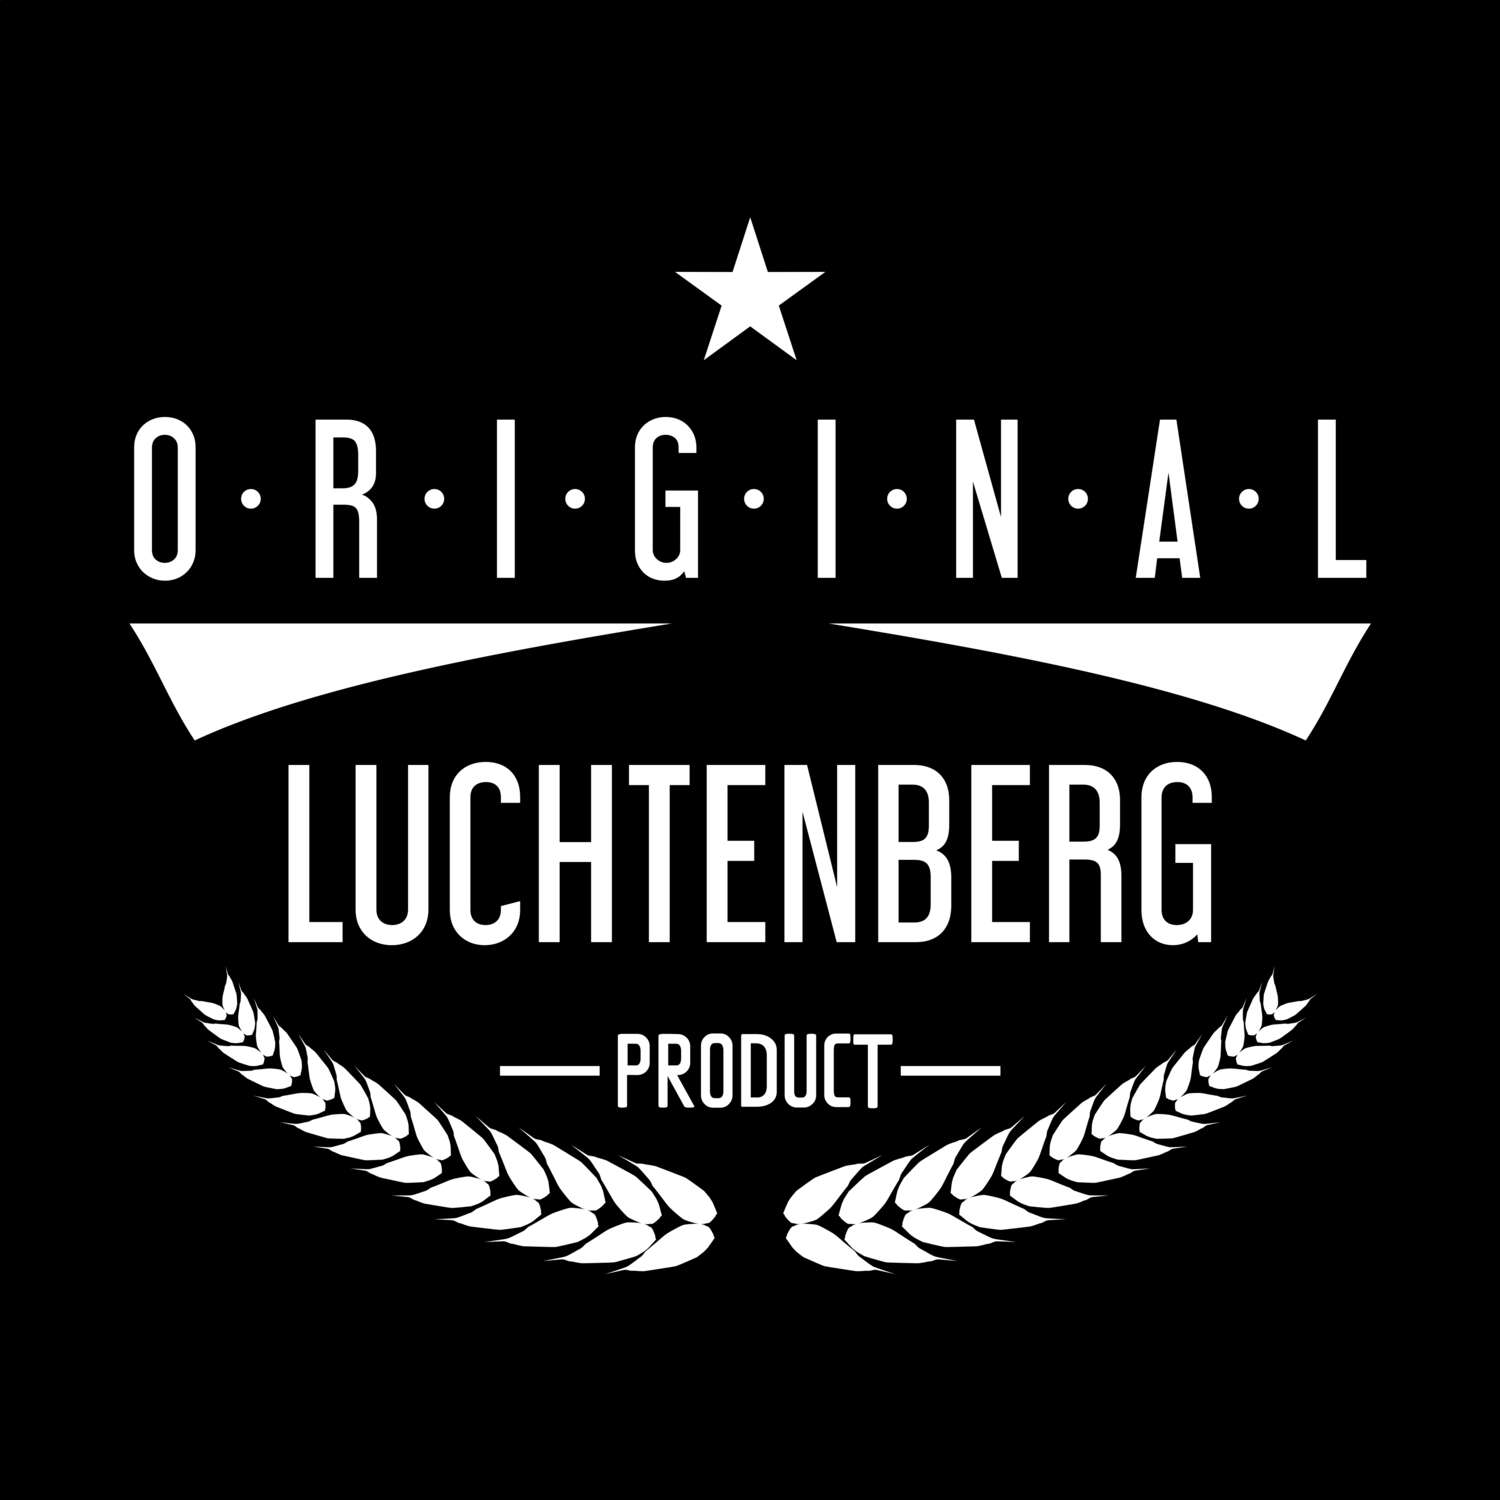 Luchtenberg T-Shirt »Original Product«